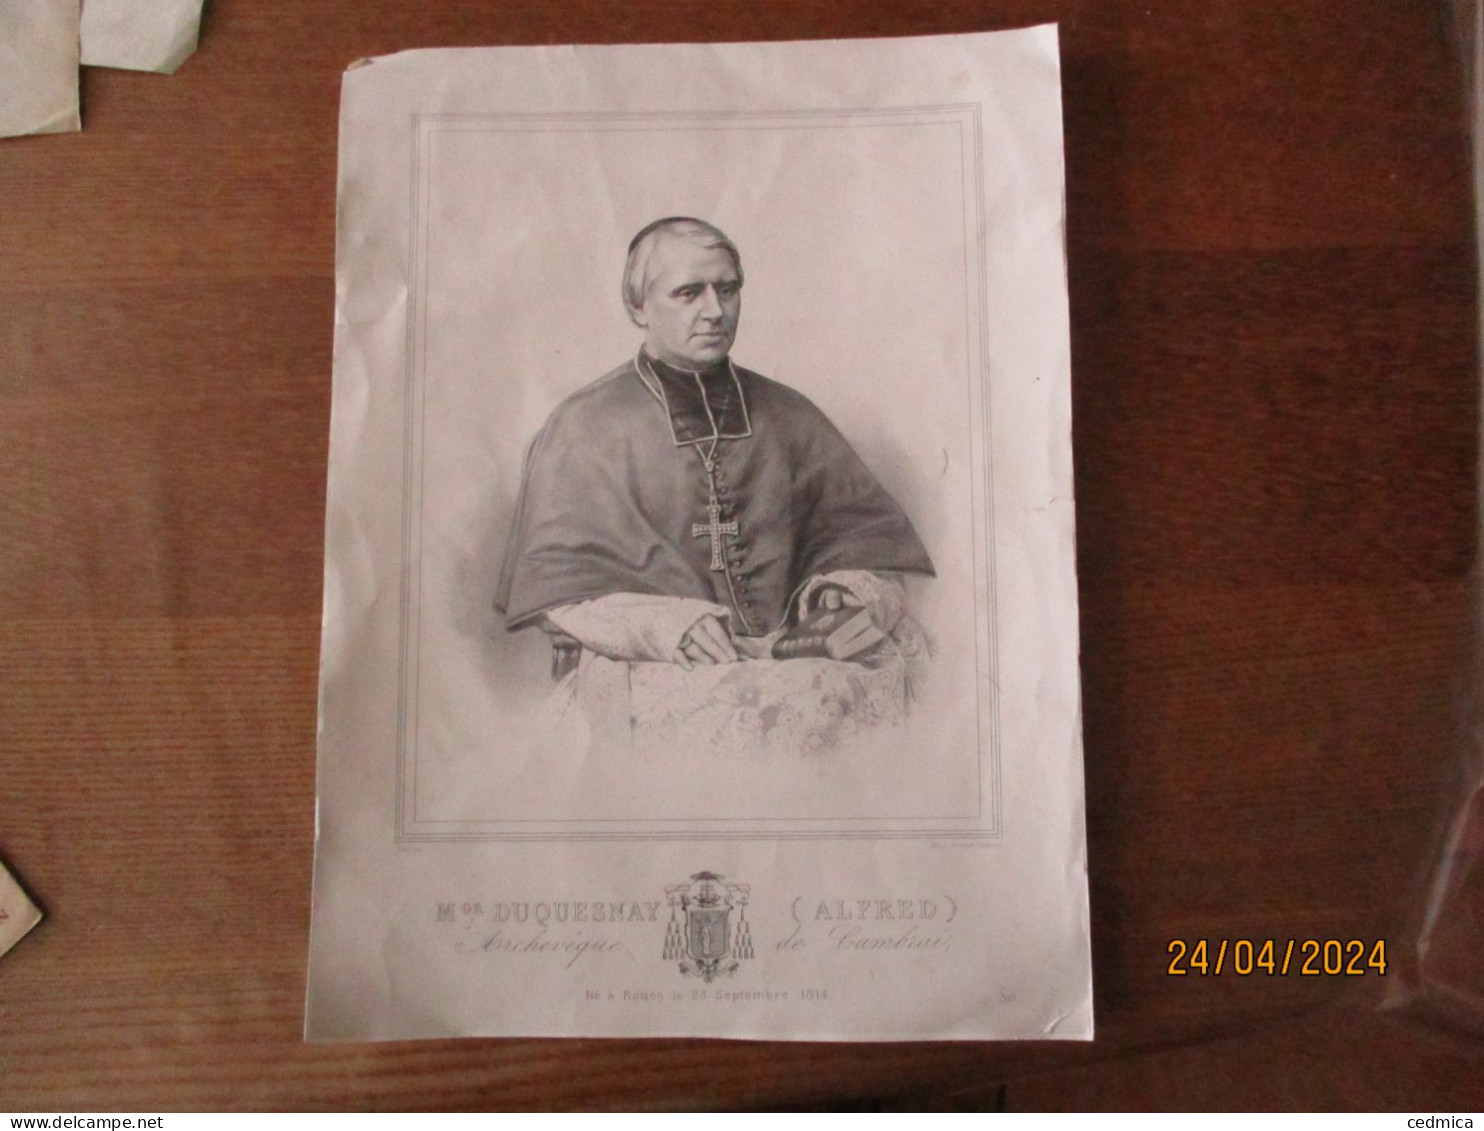 Mgr DUQUESNAY (ALFRED) ARCHEVÊQUE DE CAMBRAI NE A ROUEN LE 23 SEPTEMBRE 1814 LITH.J.RENANT CAMBRAI 36cm/26cm - Religion &  Esoterik